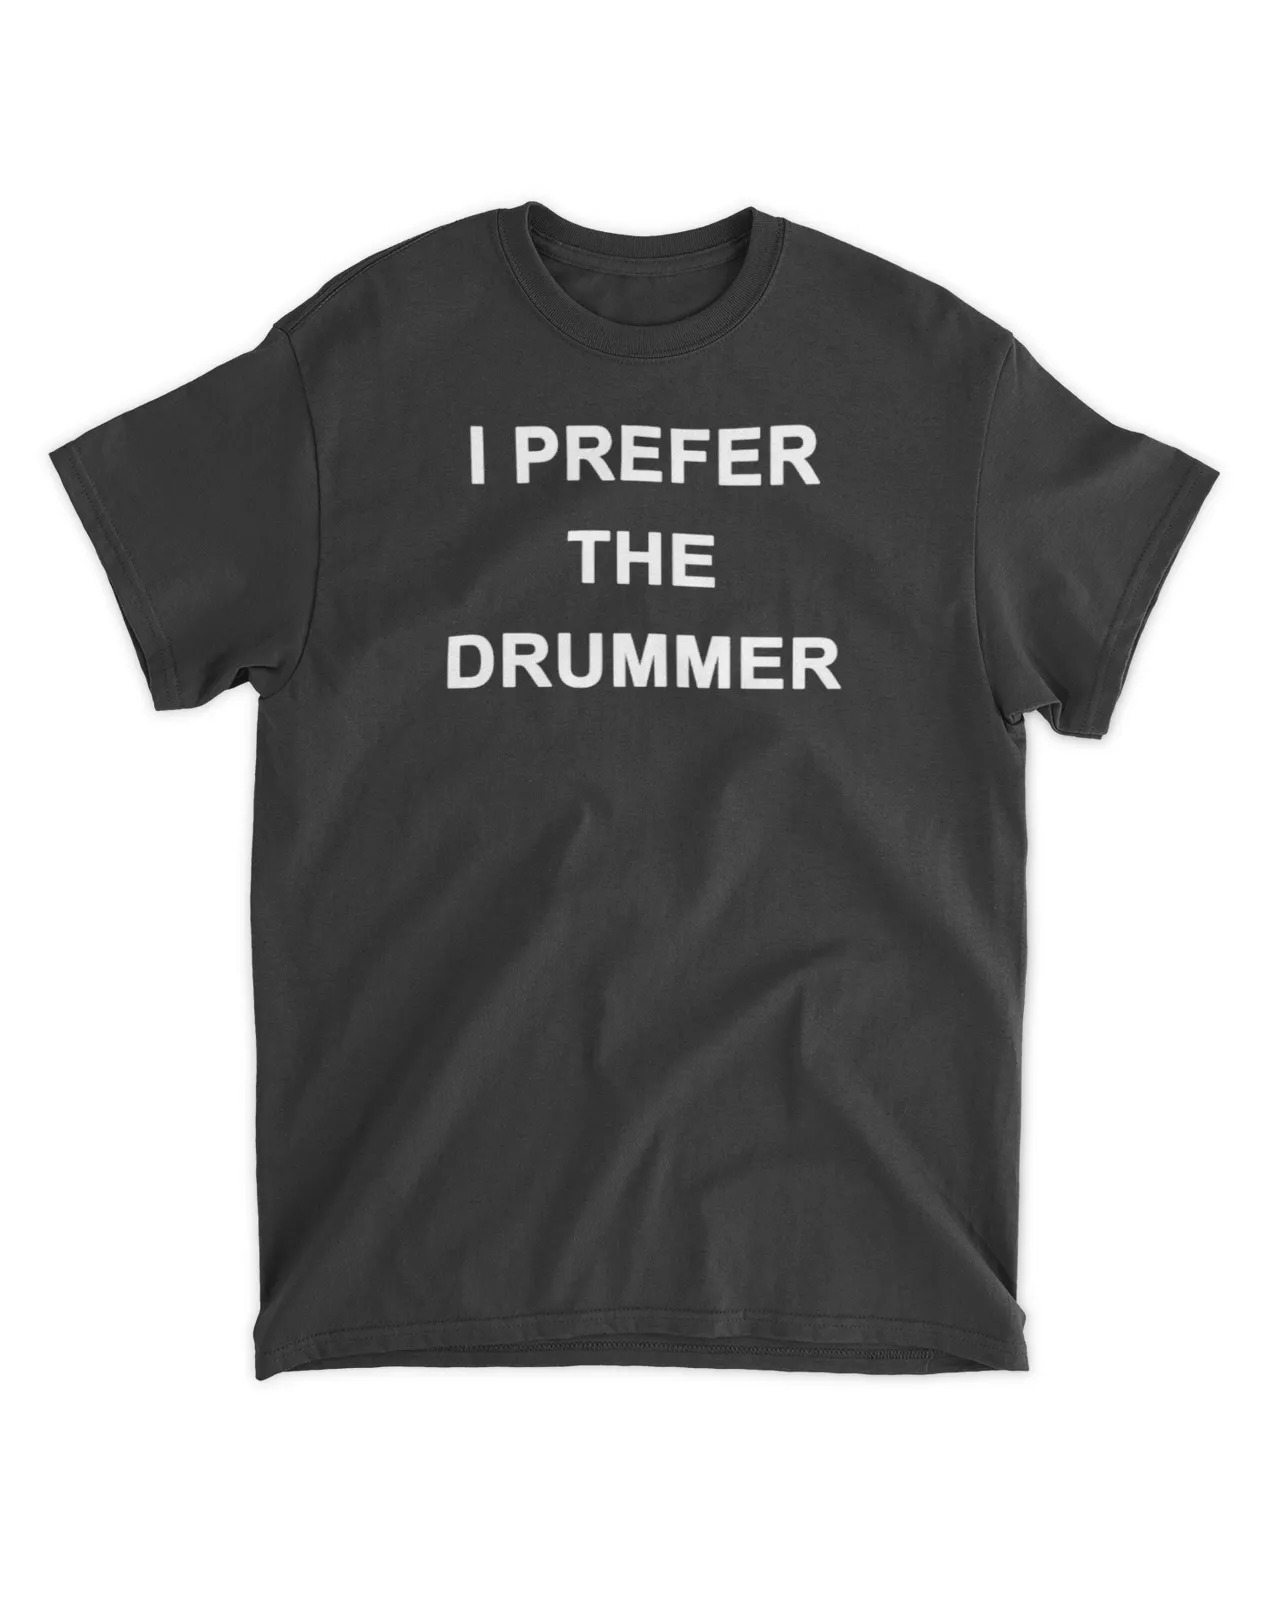  I prefer the drummer shirt